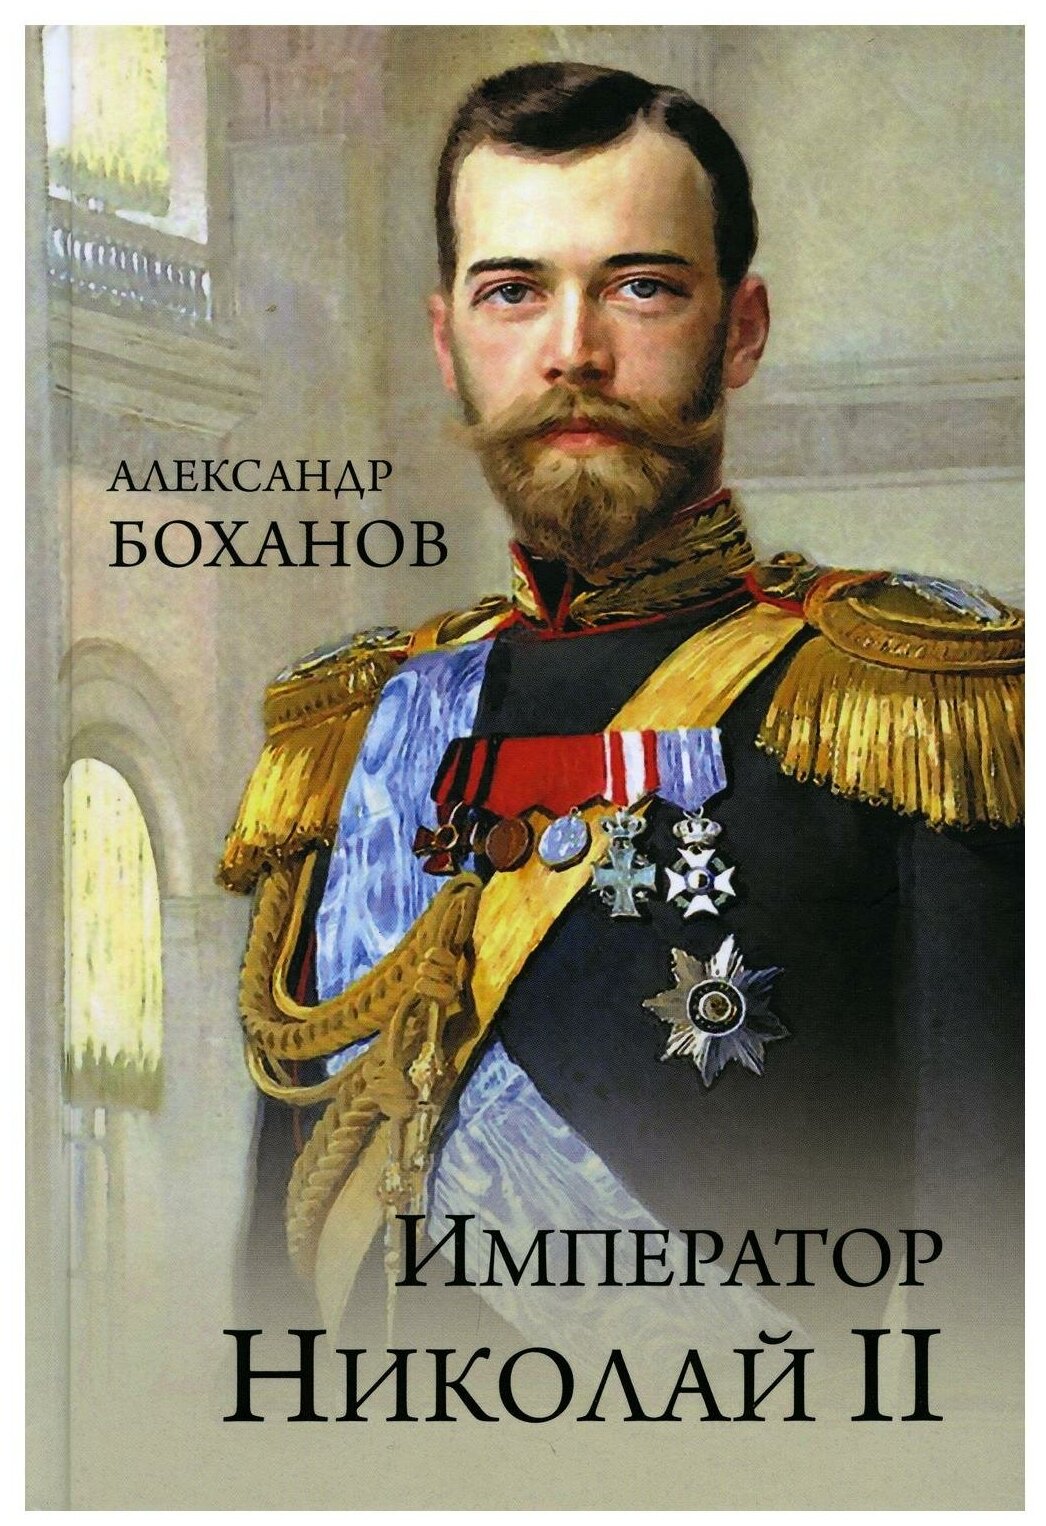 ПортретыРусскойИстории Император Николай ll (Боханов А. Н.)